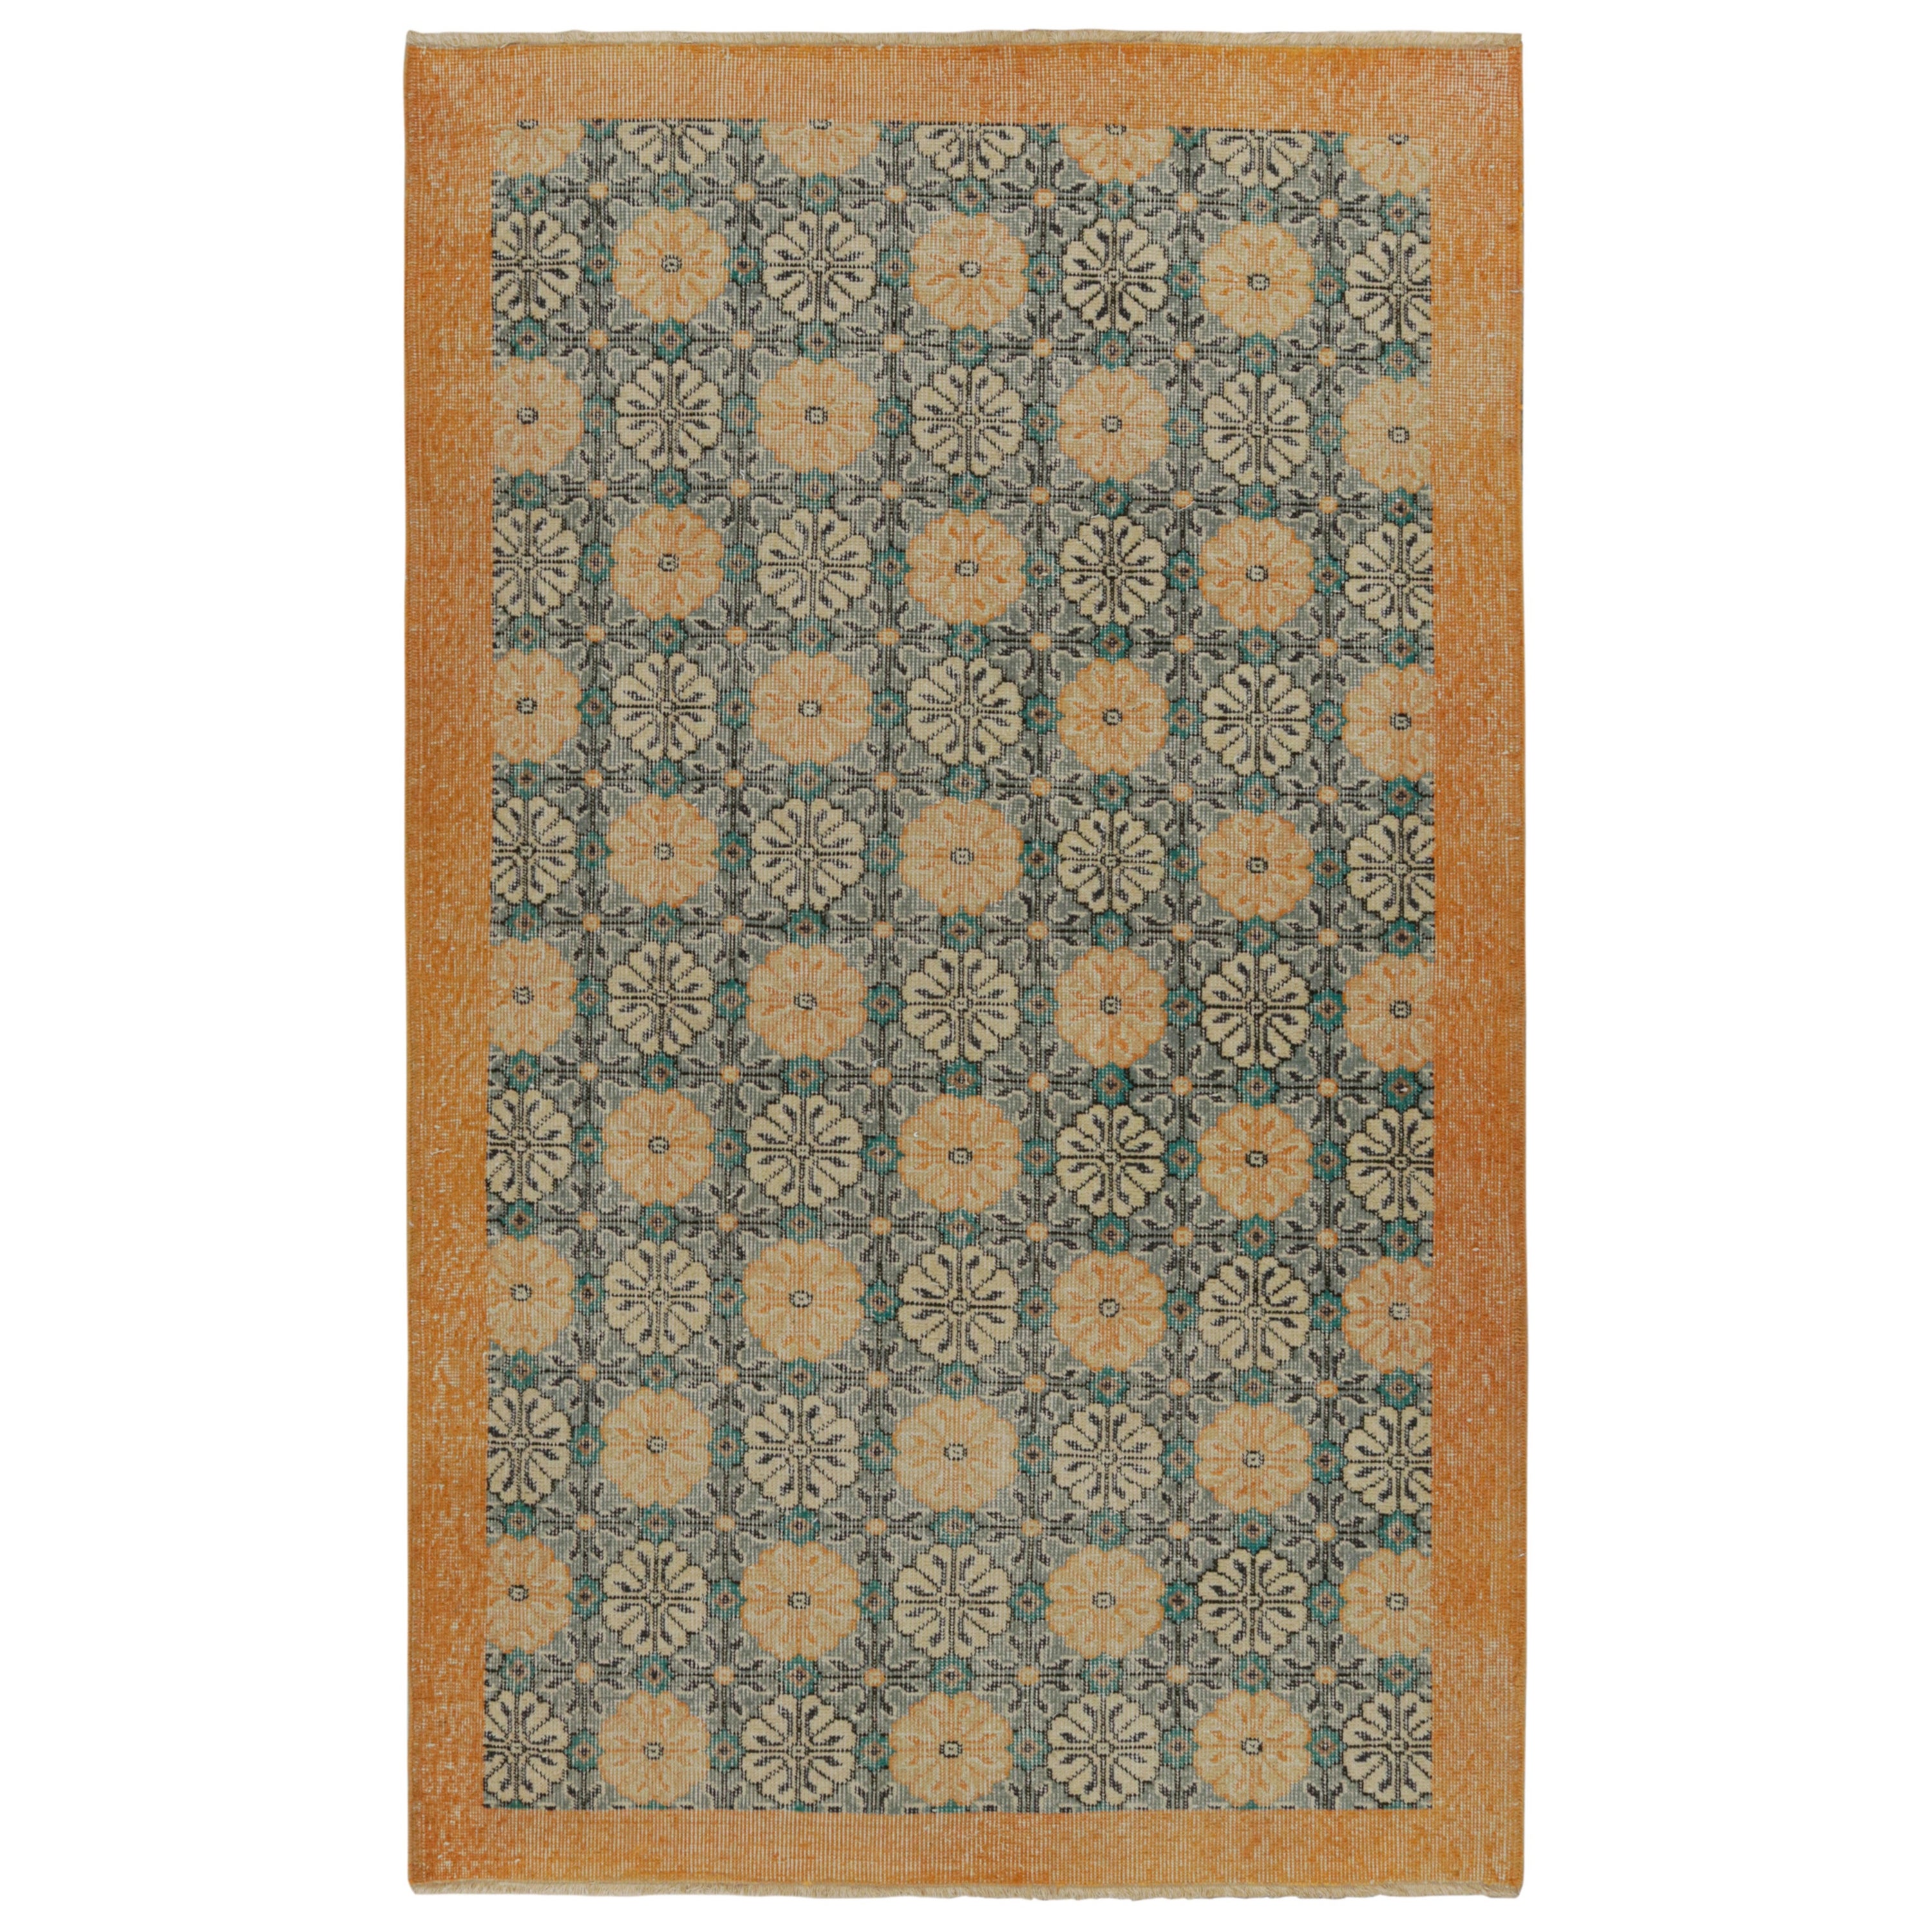 Vintage Zeki Müren Teppich in Blau & Gold Blumenmuster, von Rug & Kilim